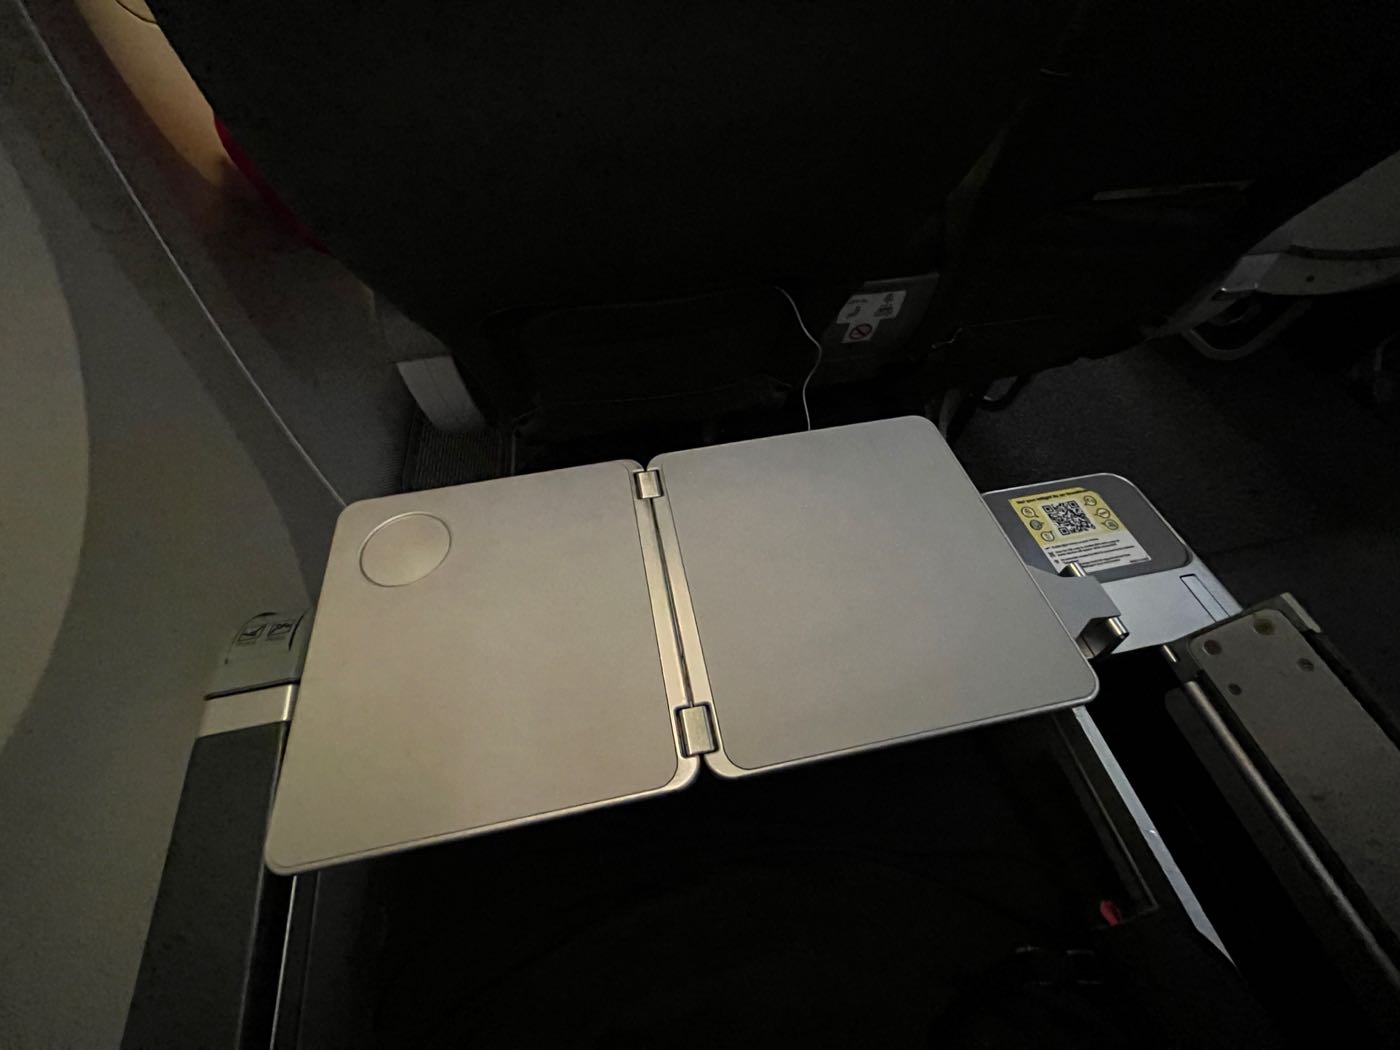 飛行紀錄 酷航豪經艙 TR897 TR898 ScootPlus 加價的位子讓你好睡一點與神秘零食包 - 一口冒險 Bitesized Adventure